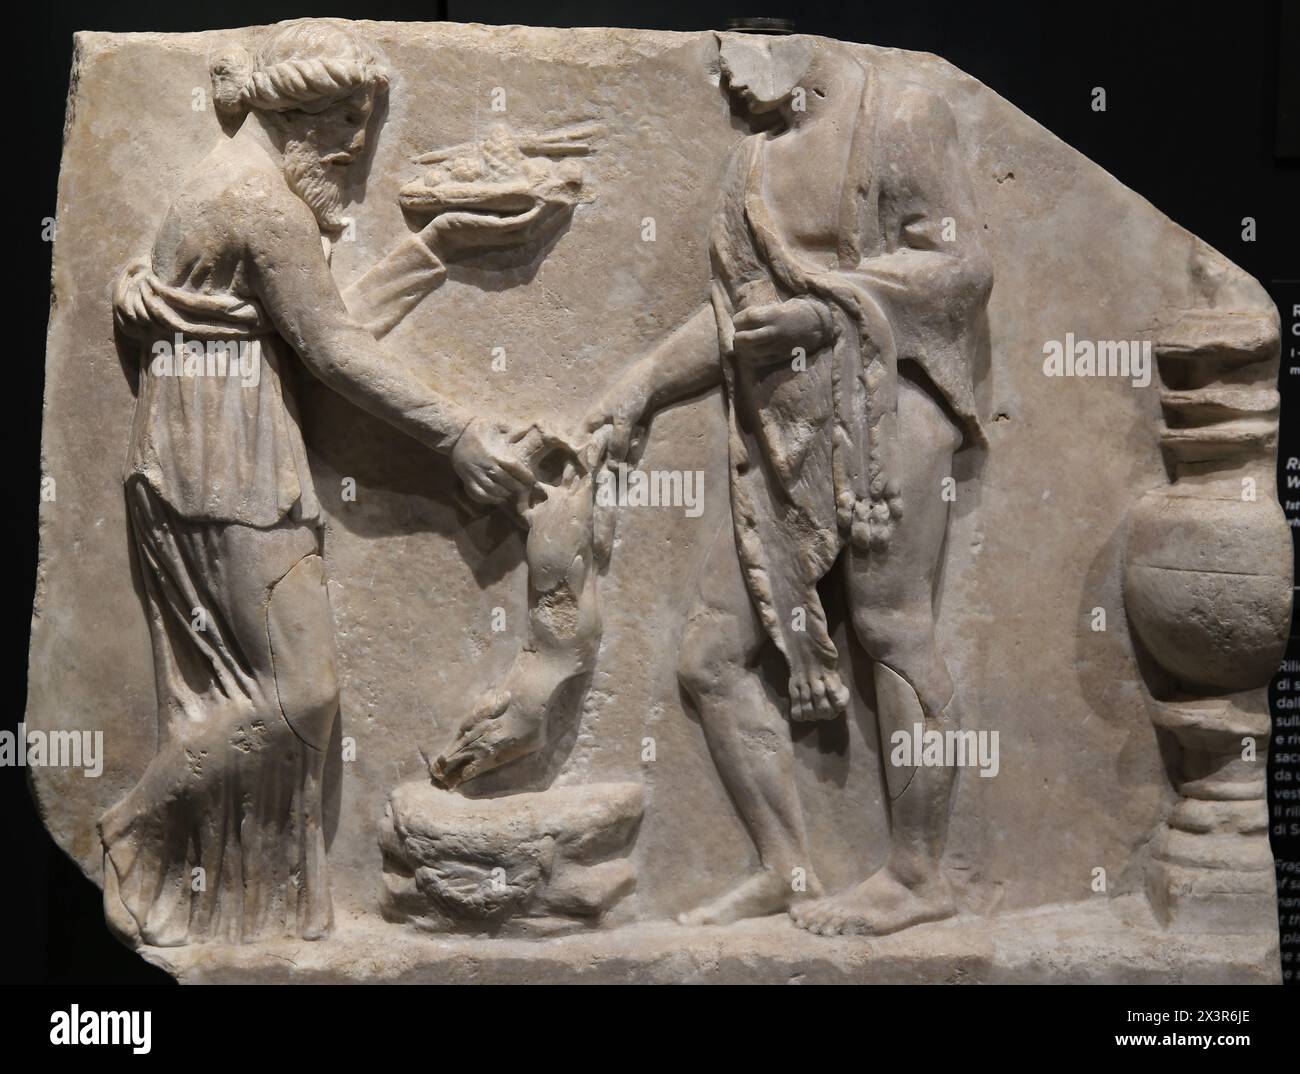 Erleichterung mit einer Opferszene. 1.-2. Jahrhundert n. Chr. (?). Weißer Marmor. Archäologisches Museum Turin. Italien. Stockfoto